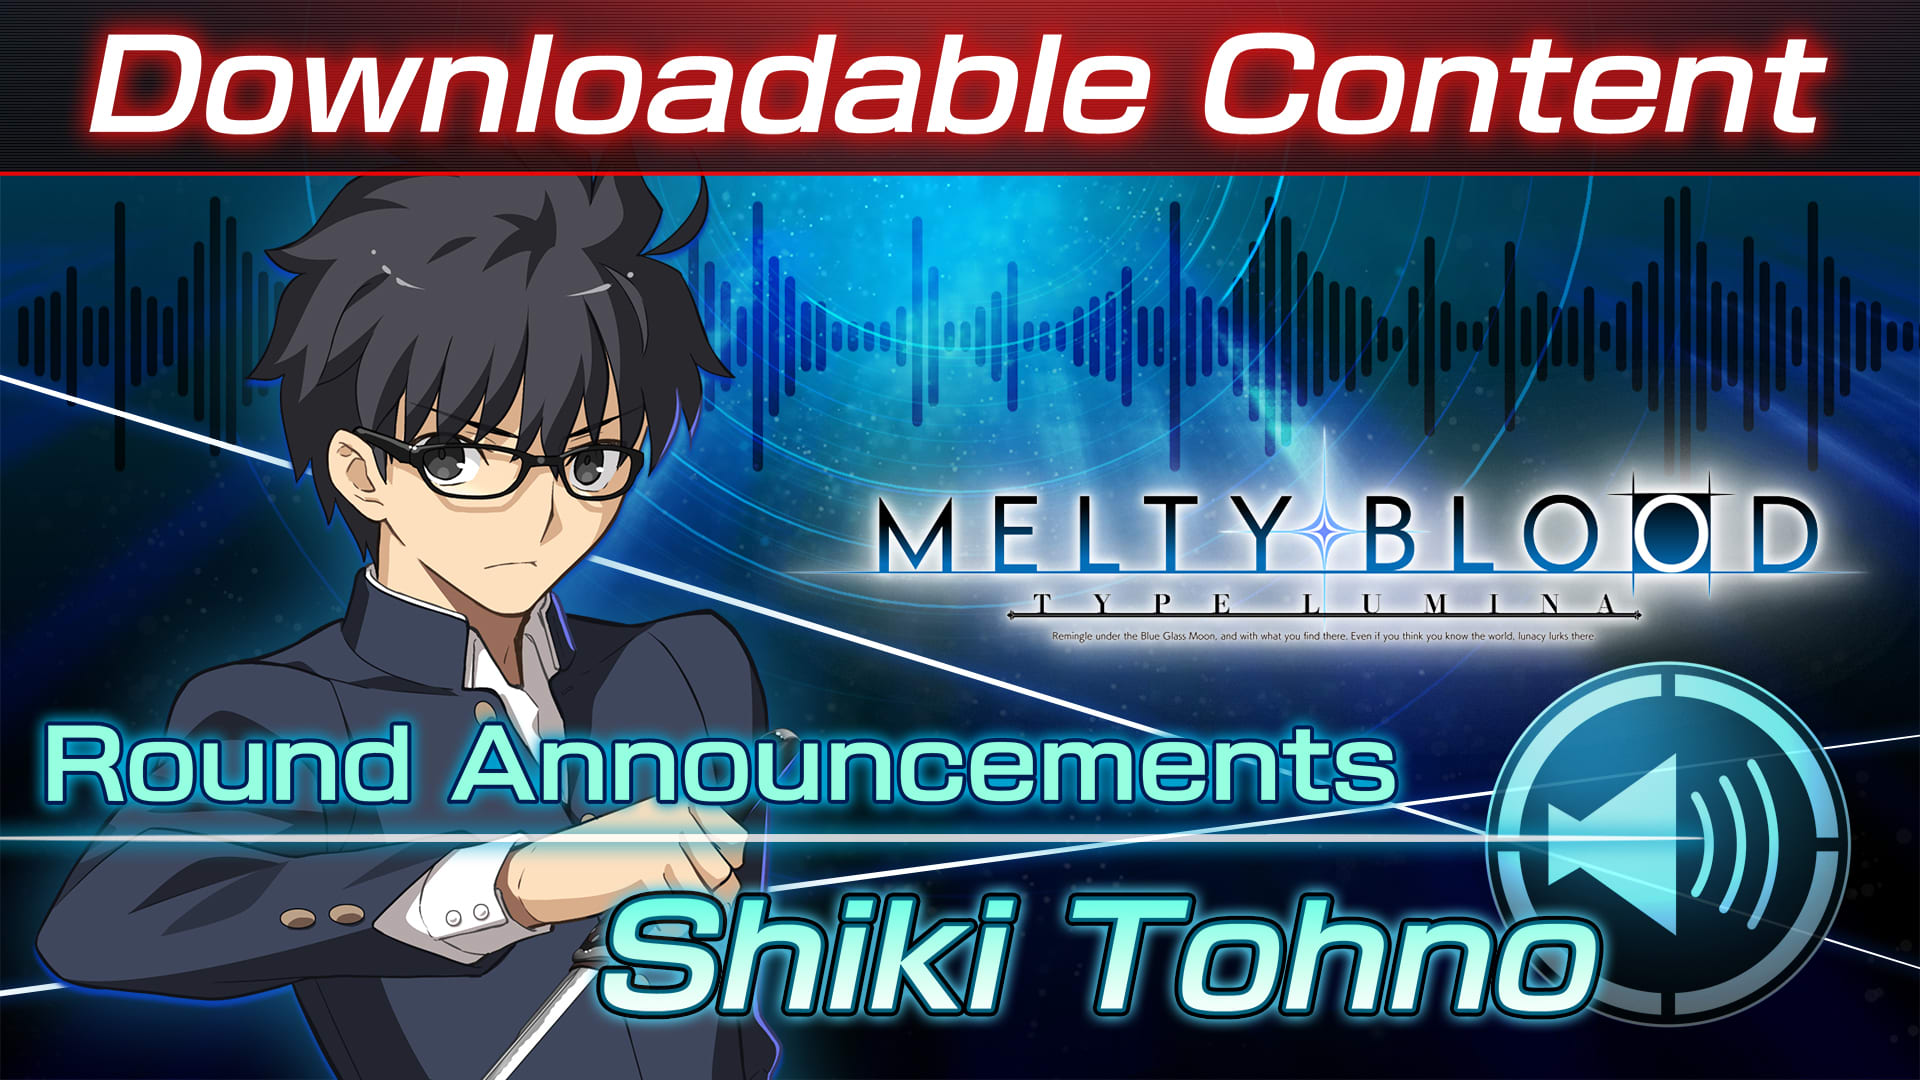 DLC: Shiki Tohno Round Announcements